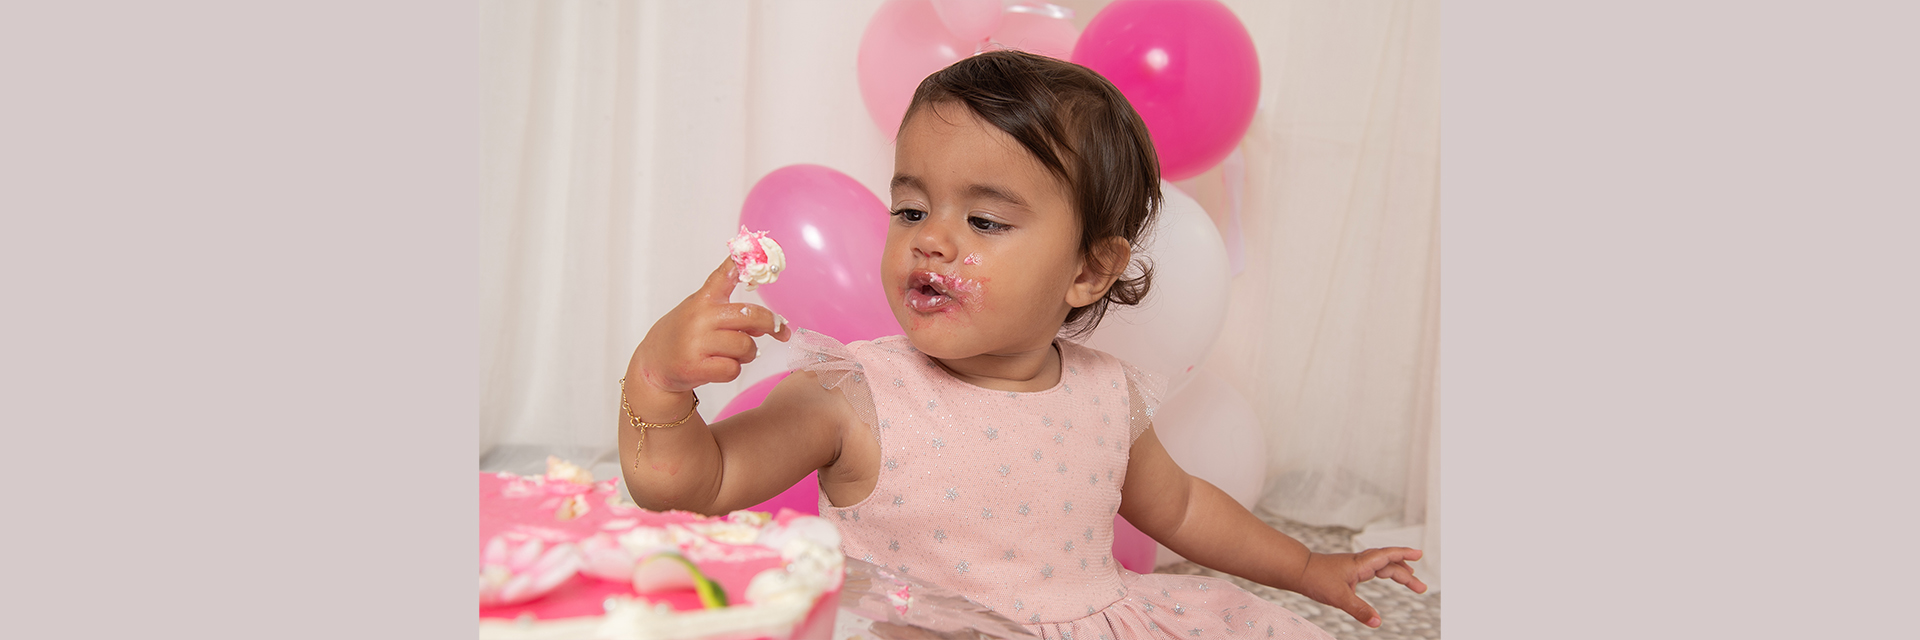 Cake-Smash-Shooting zum Geburtstag mit Mädchen und rosa Torte